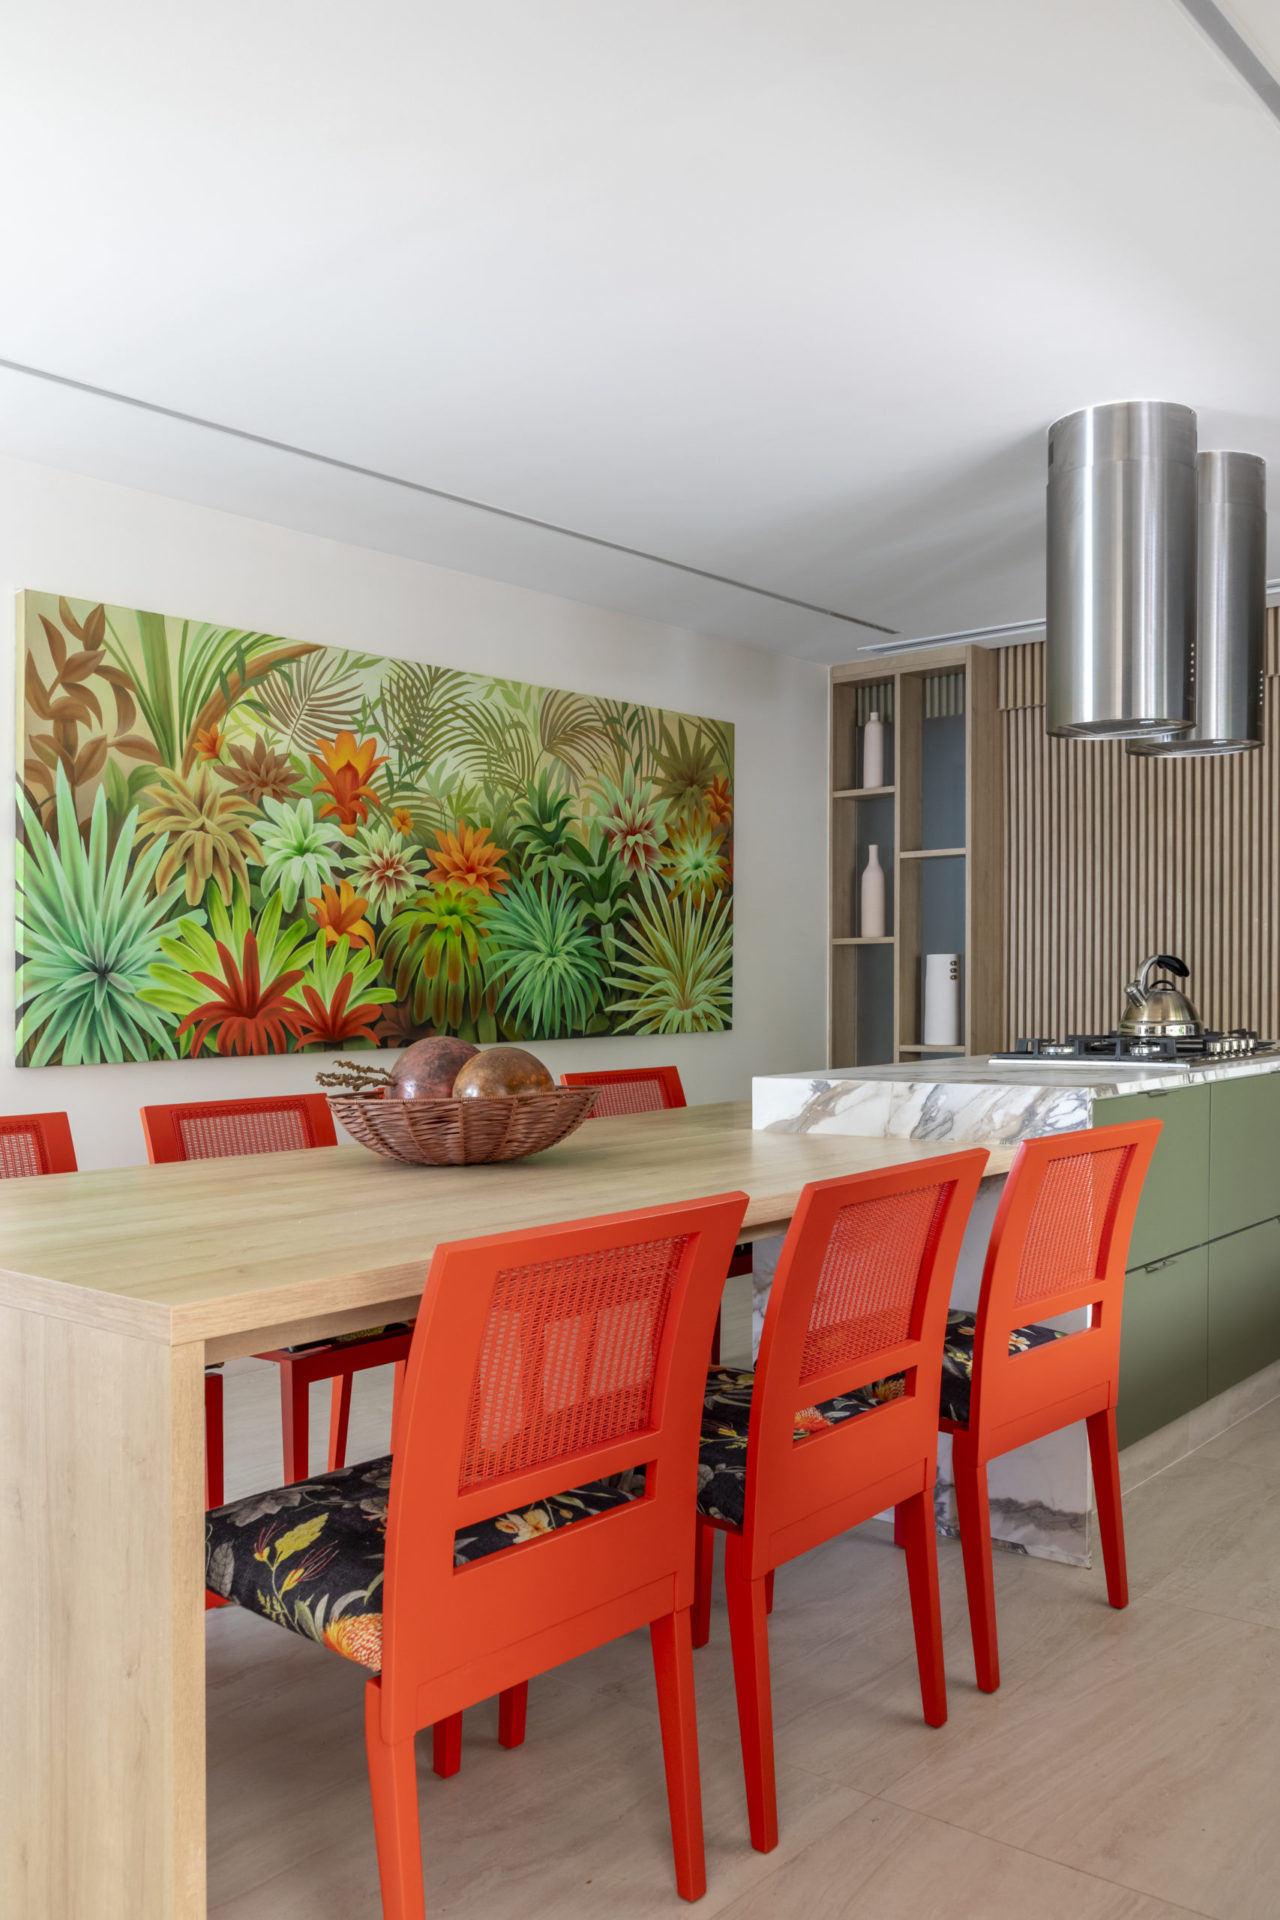 Cozinha com ilha central, duas coifas redondas, uma mesa e cadeiras na cor laranja, acoplada a ilha, e ao fundo, um quadro repelta de bromélias decorão a cozinha